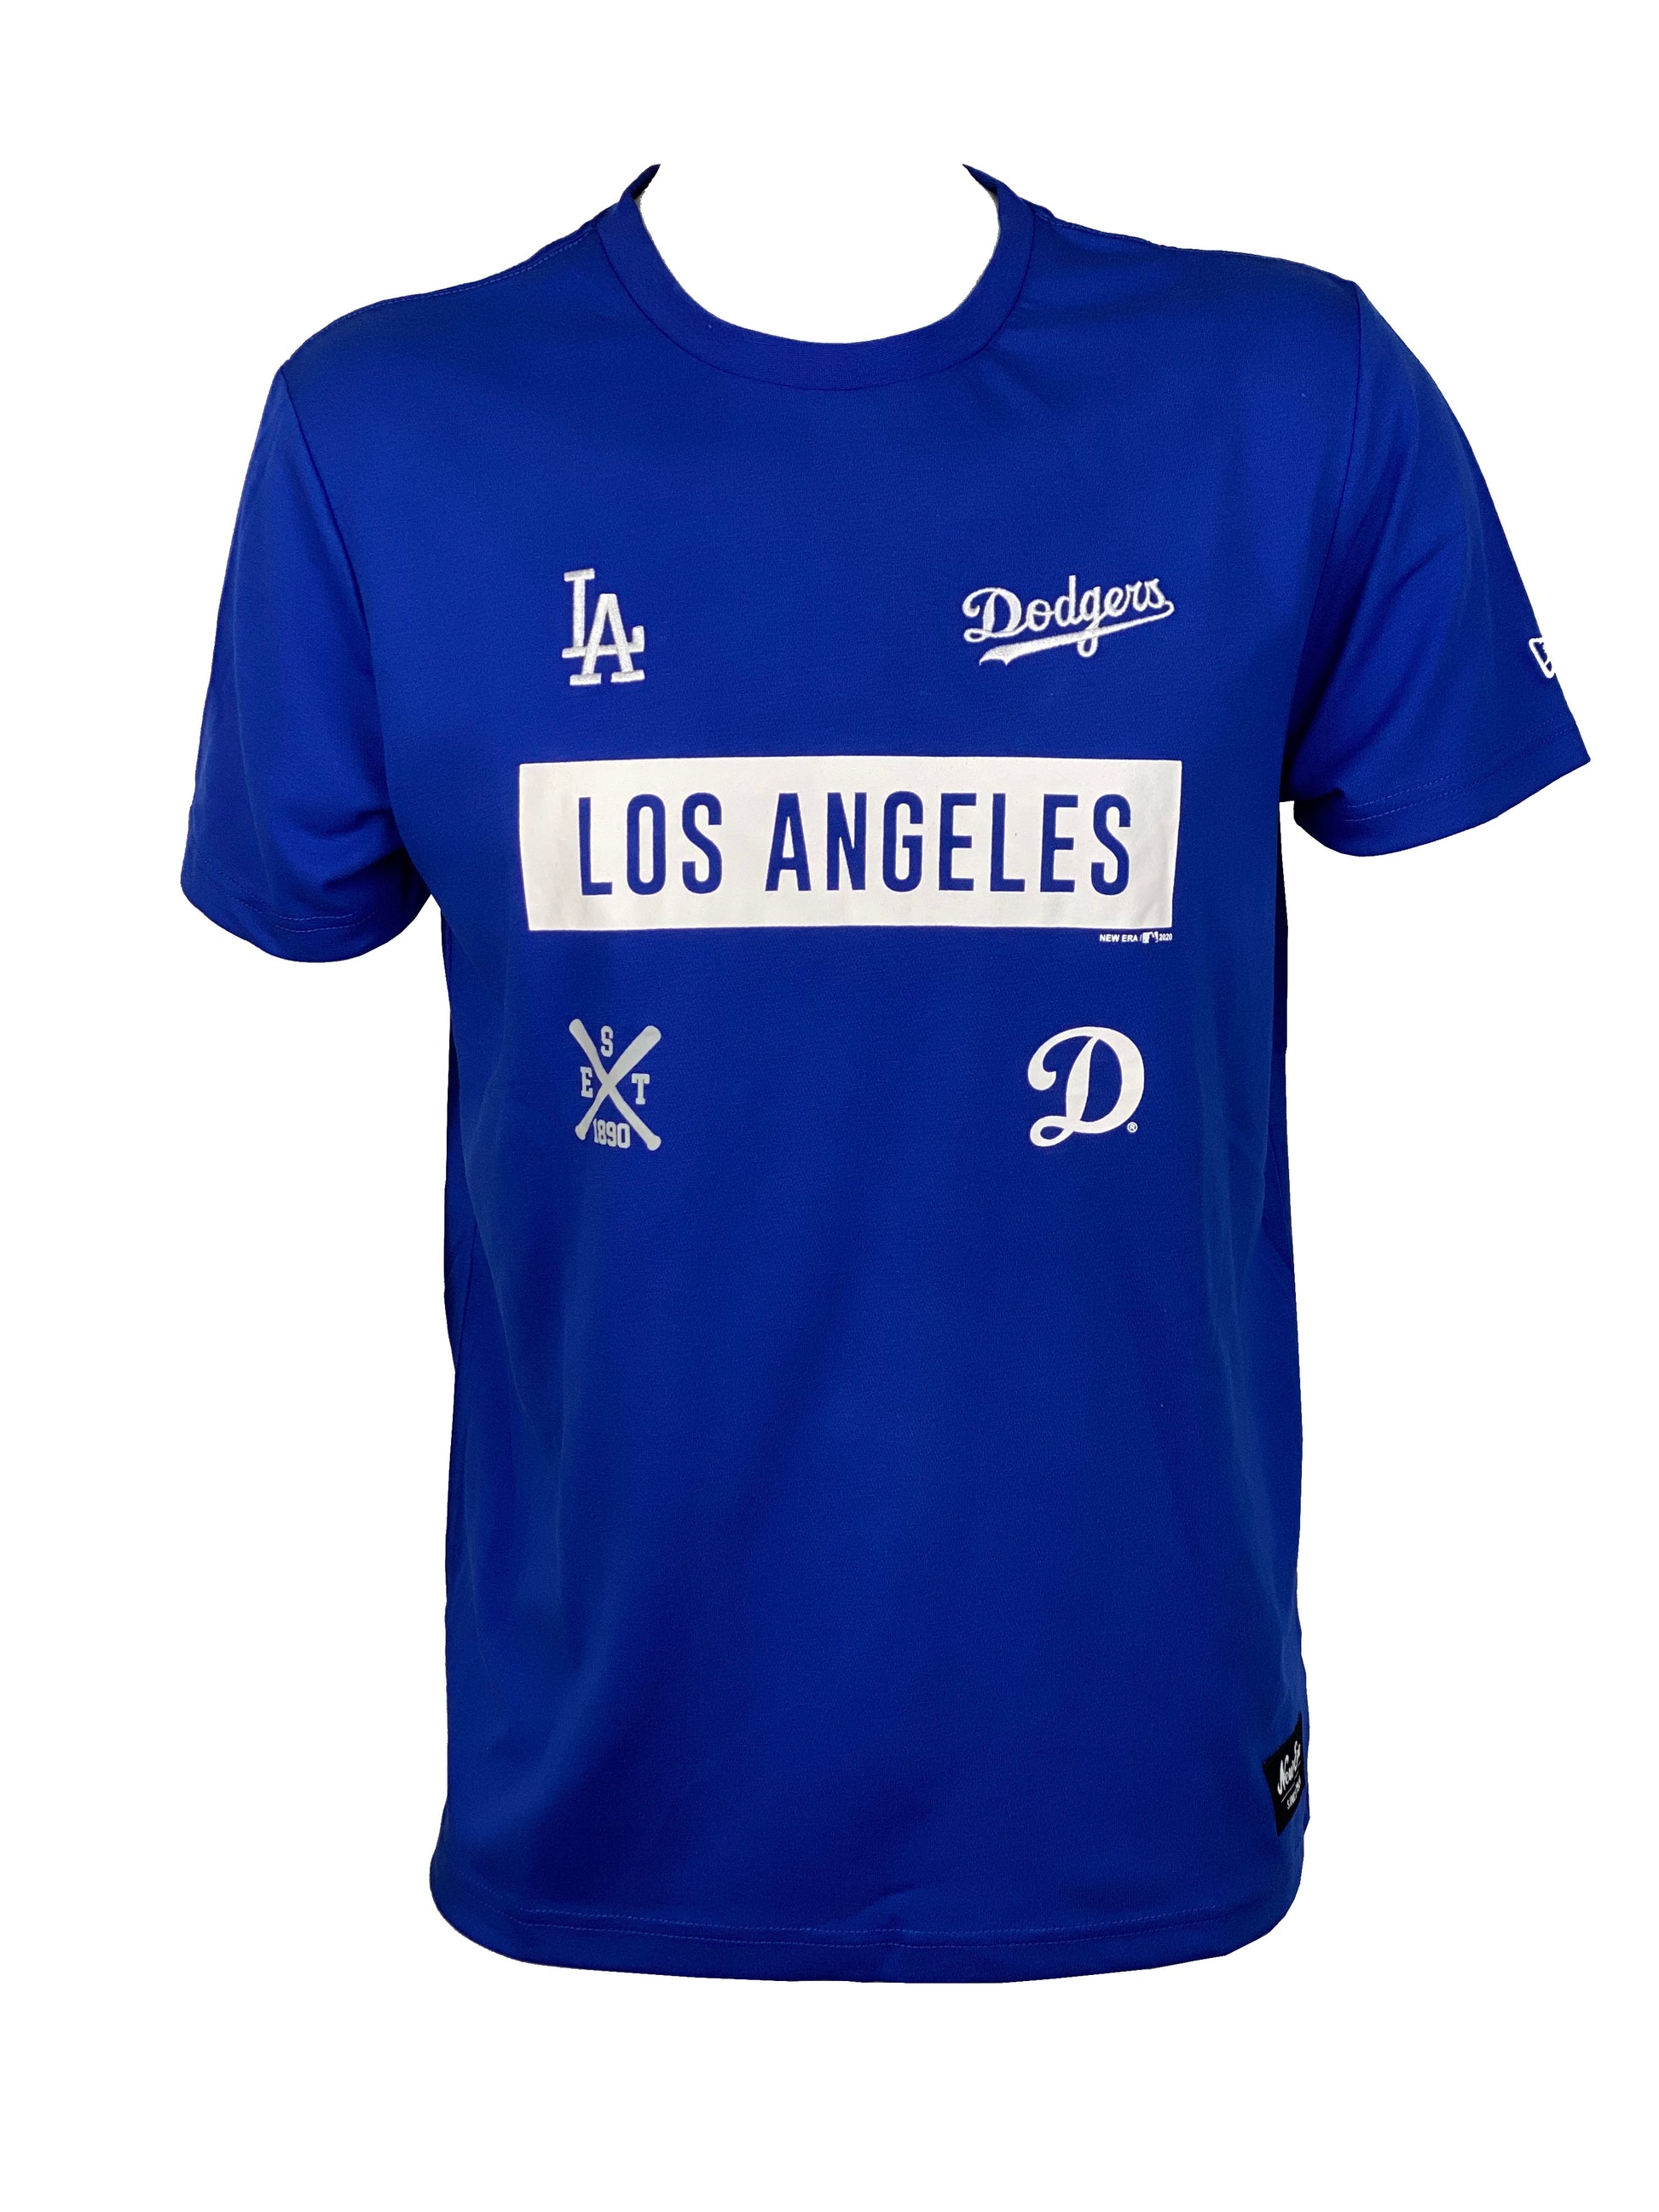 Shop Los Angeles Dodgers Fan Gear, Los Angeles Dodgers Fan Shop in